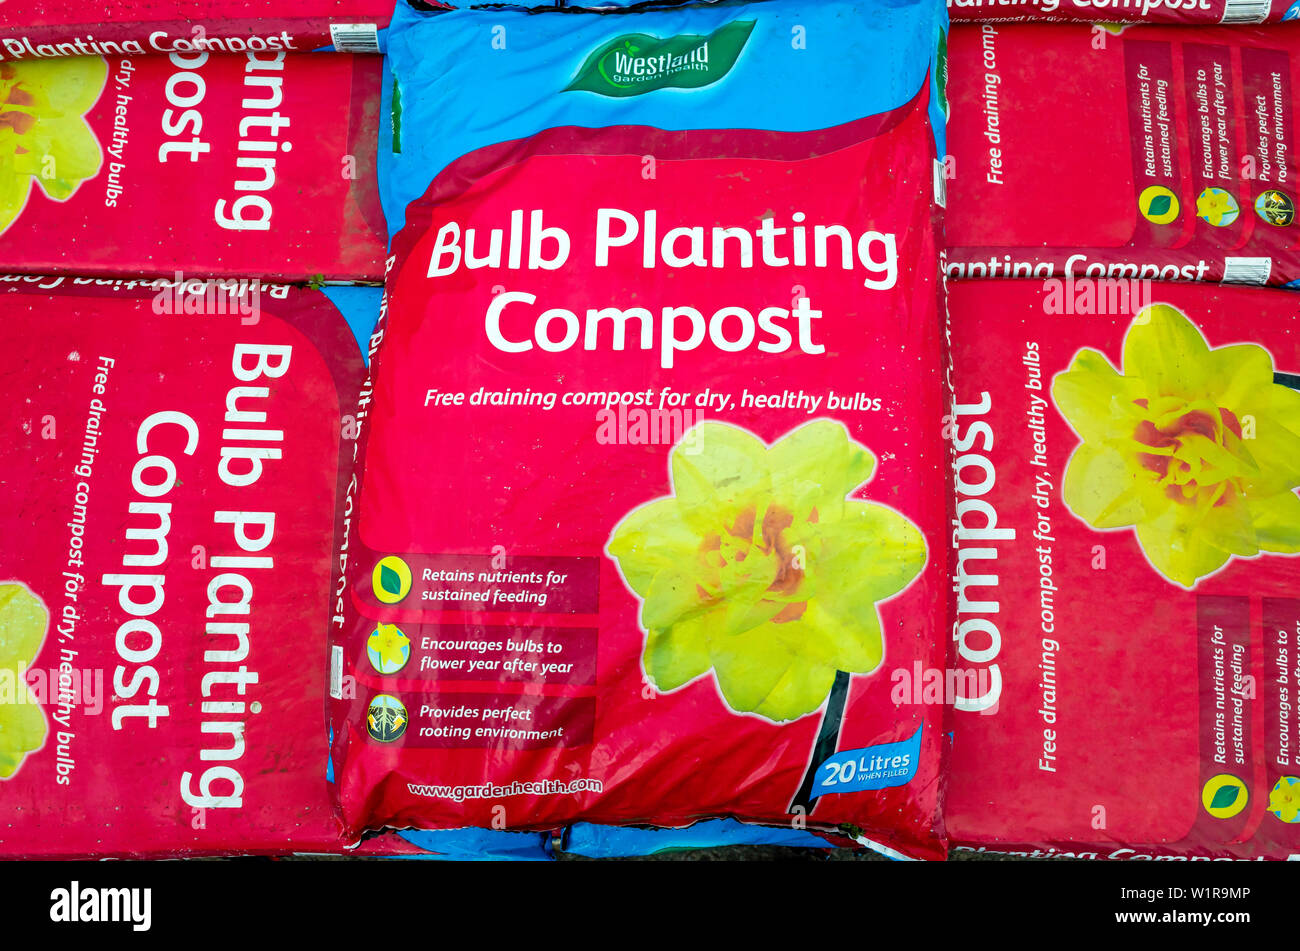 Ein Stapel von Taschen von Westland Glühlampe Einpflanzen Kompost in einem Gartencenter beschriftet - Kostenlose entleeren Kompost für trockene gesunde Zwiebeln Stockfoto